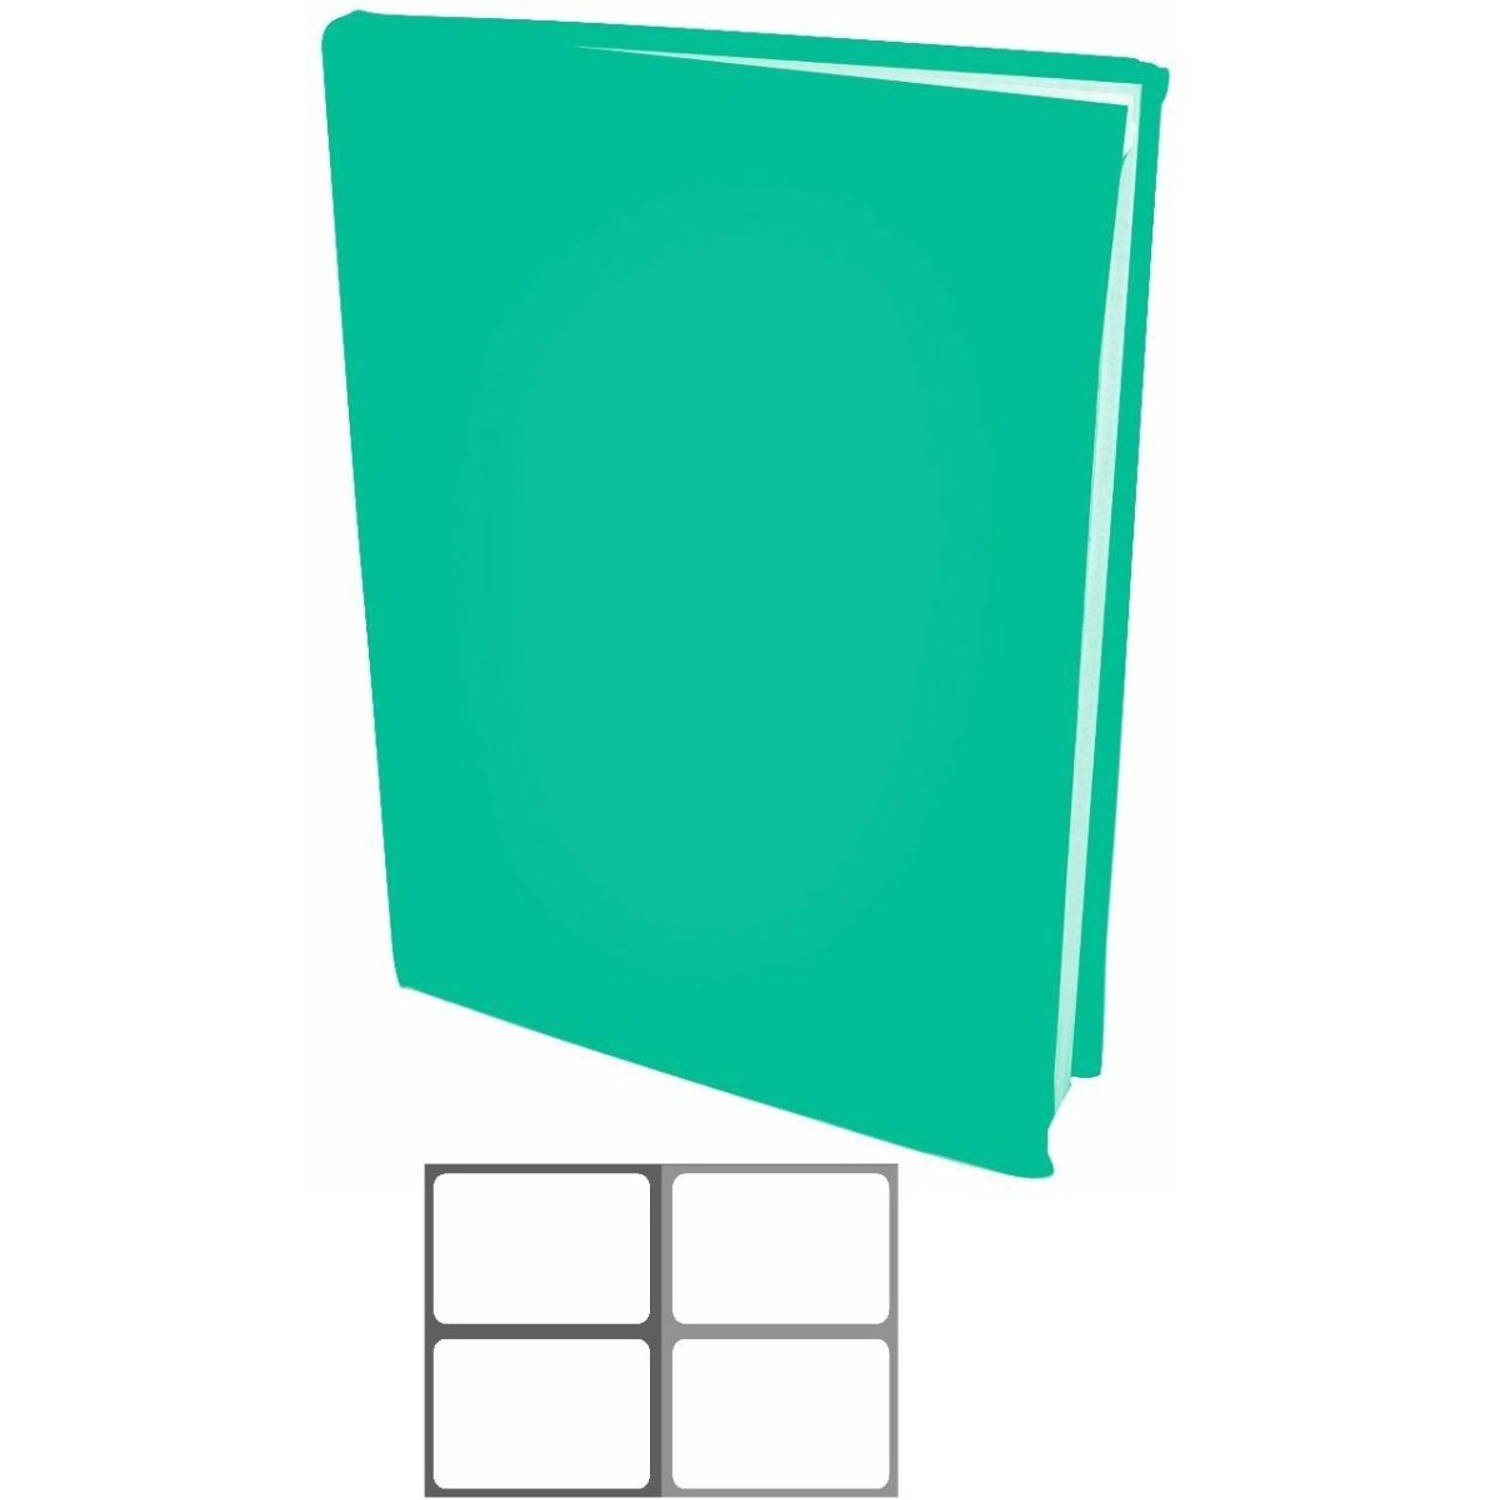 Benza Rekbare Boekenkaften A4 - Turquoise Groen - 12 Stuks Inclusief Grijze Labels